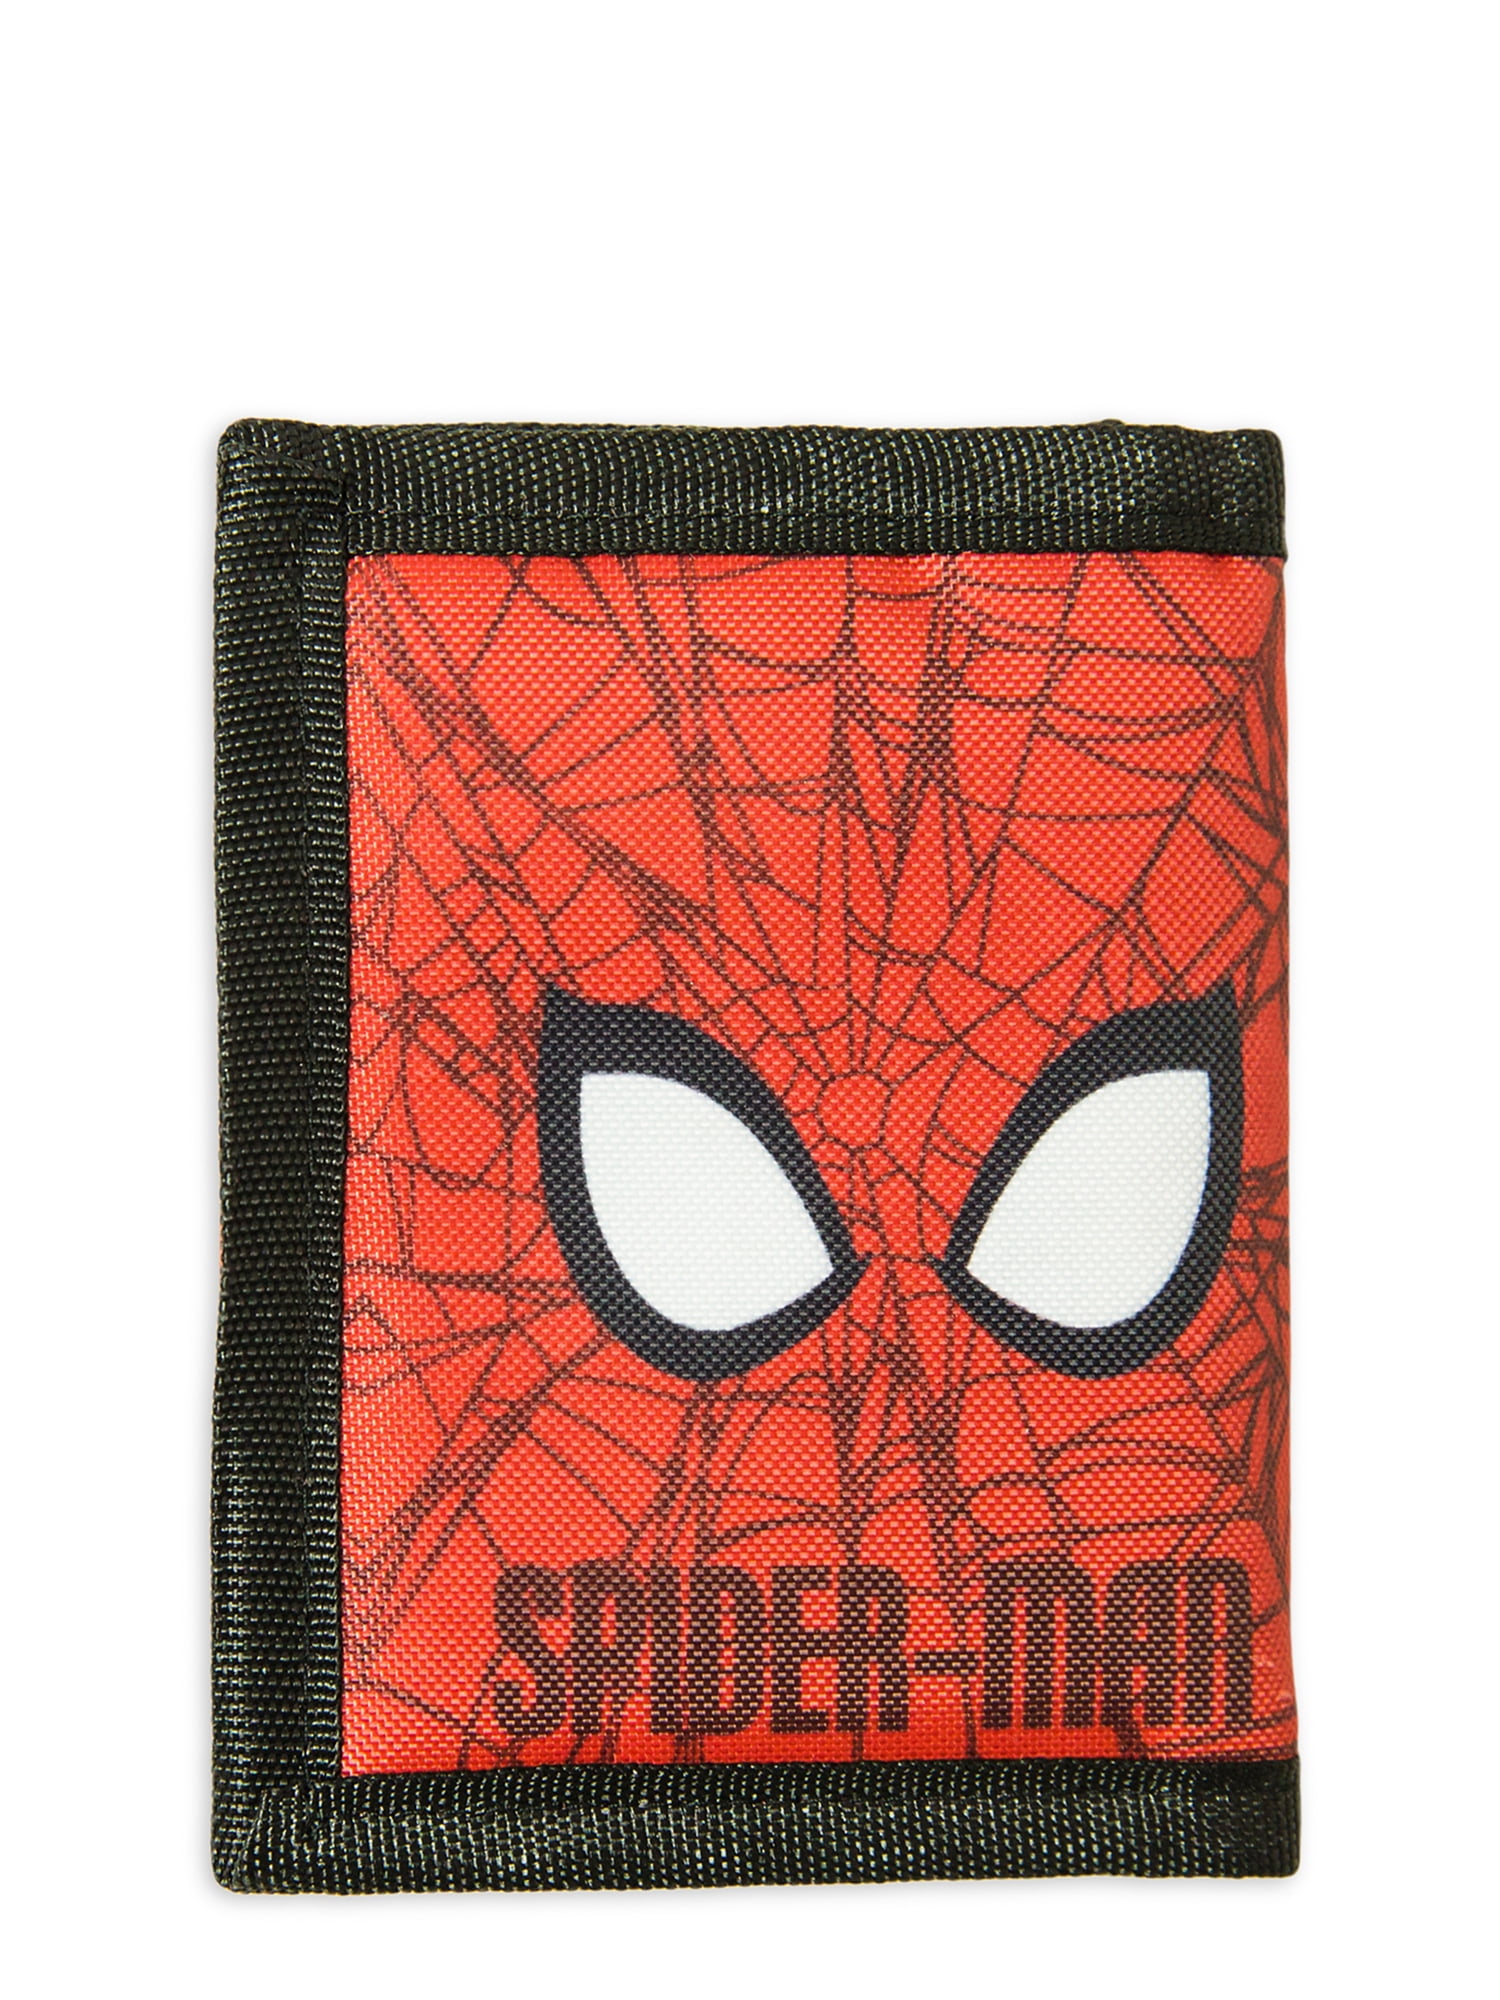 Marvel Spider Man Wallet Canvas Tri-fold Bill Coin Pocket Boy Gift Blue